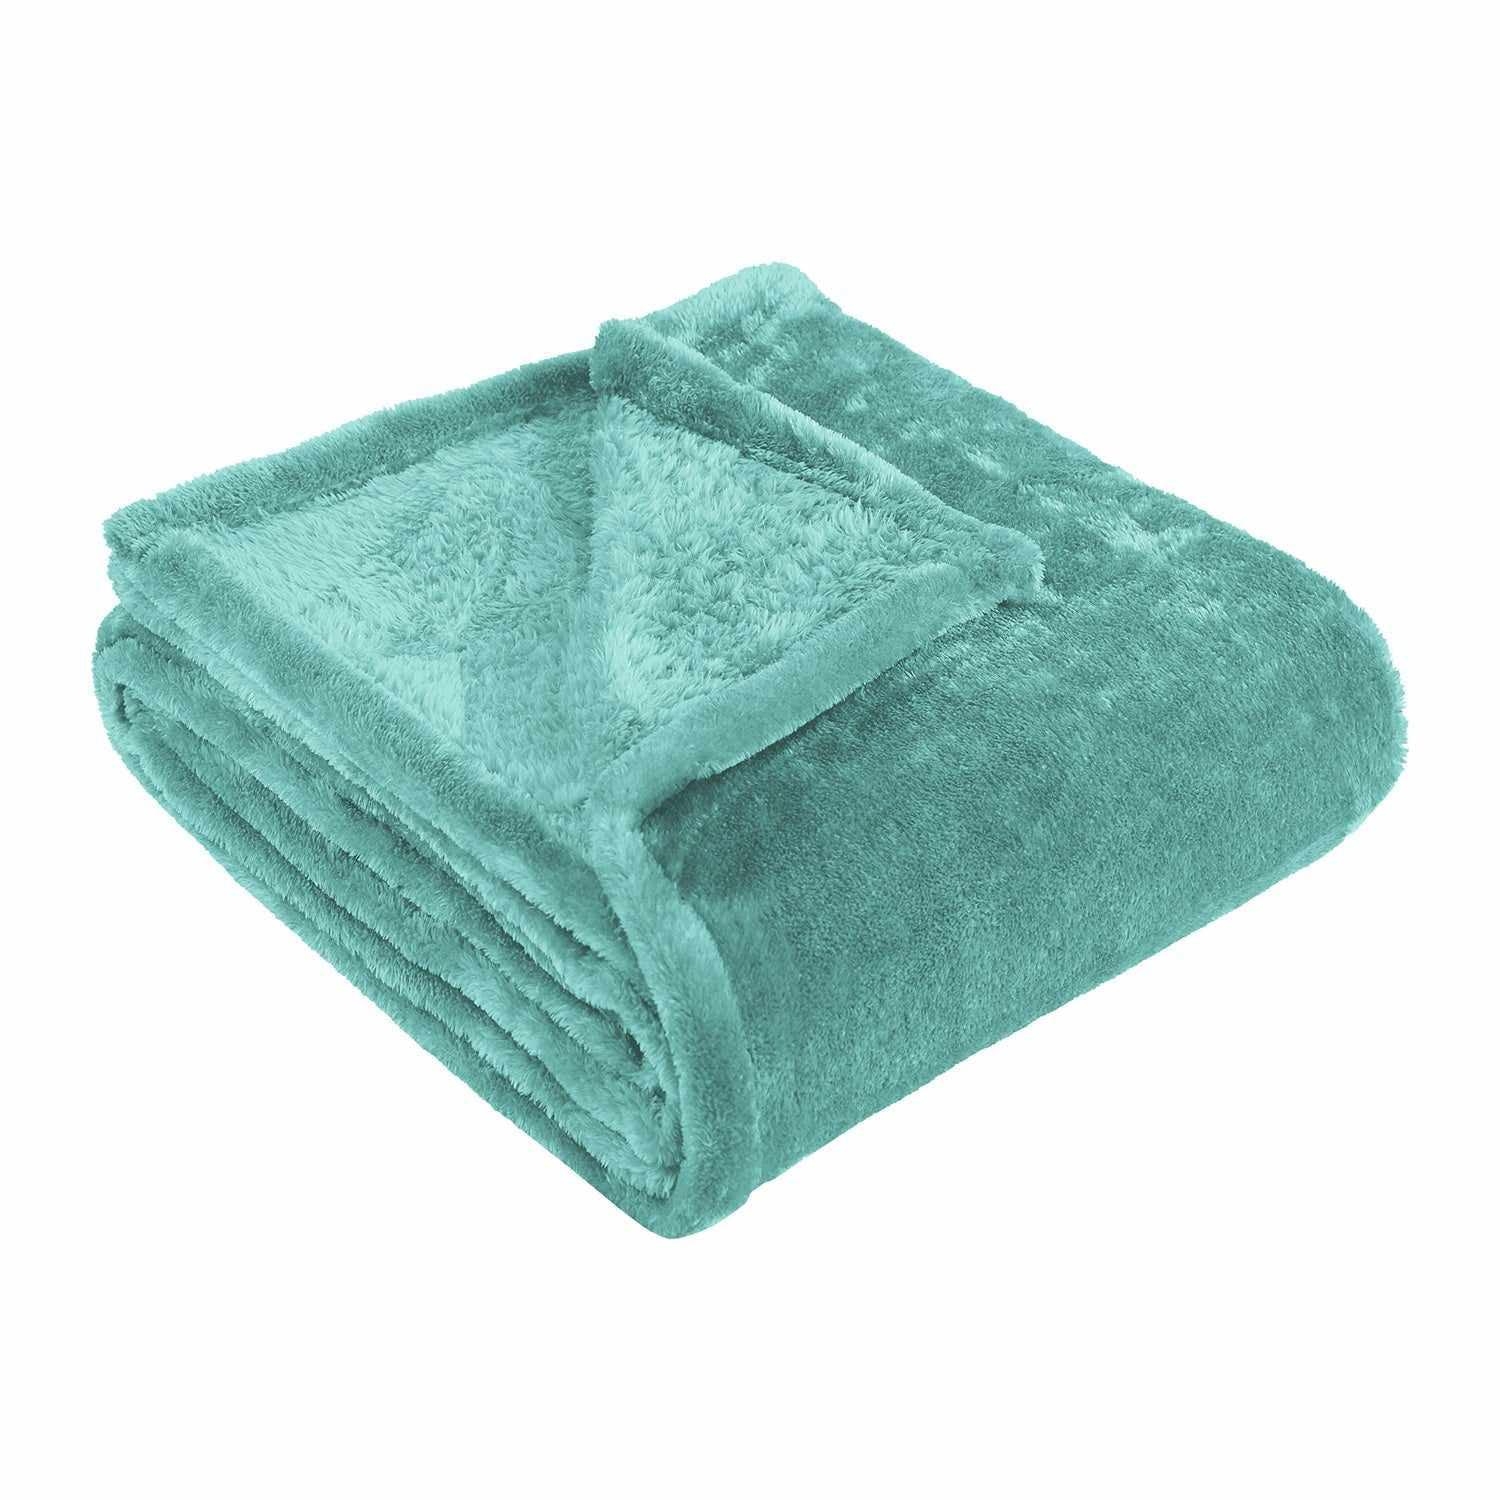 Luxurious Turquoise Fleece Full/Queen Throw Blanket - Fade Resistant